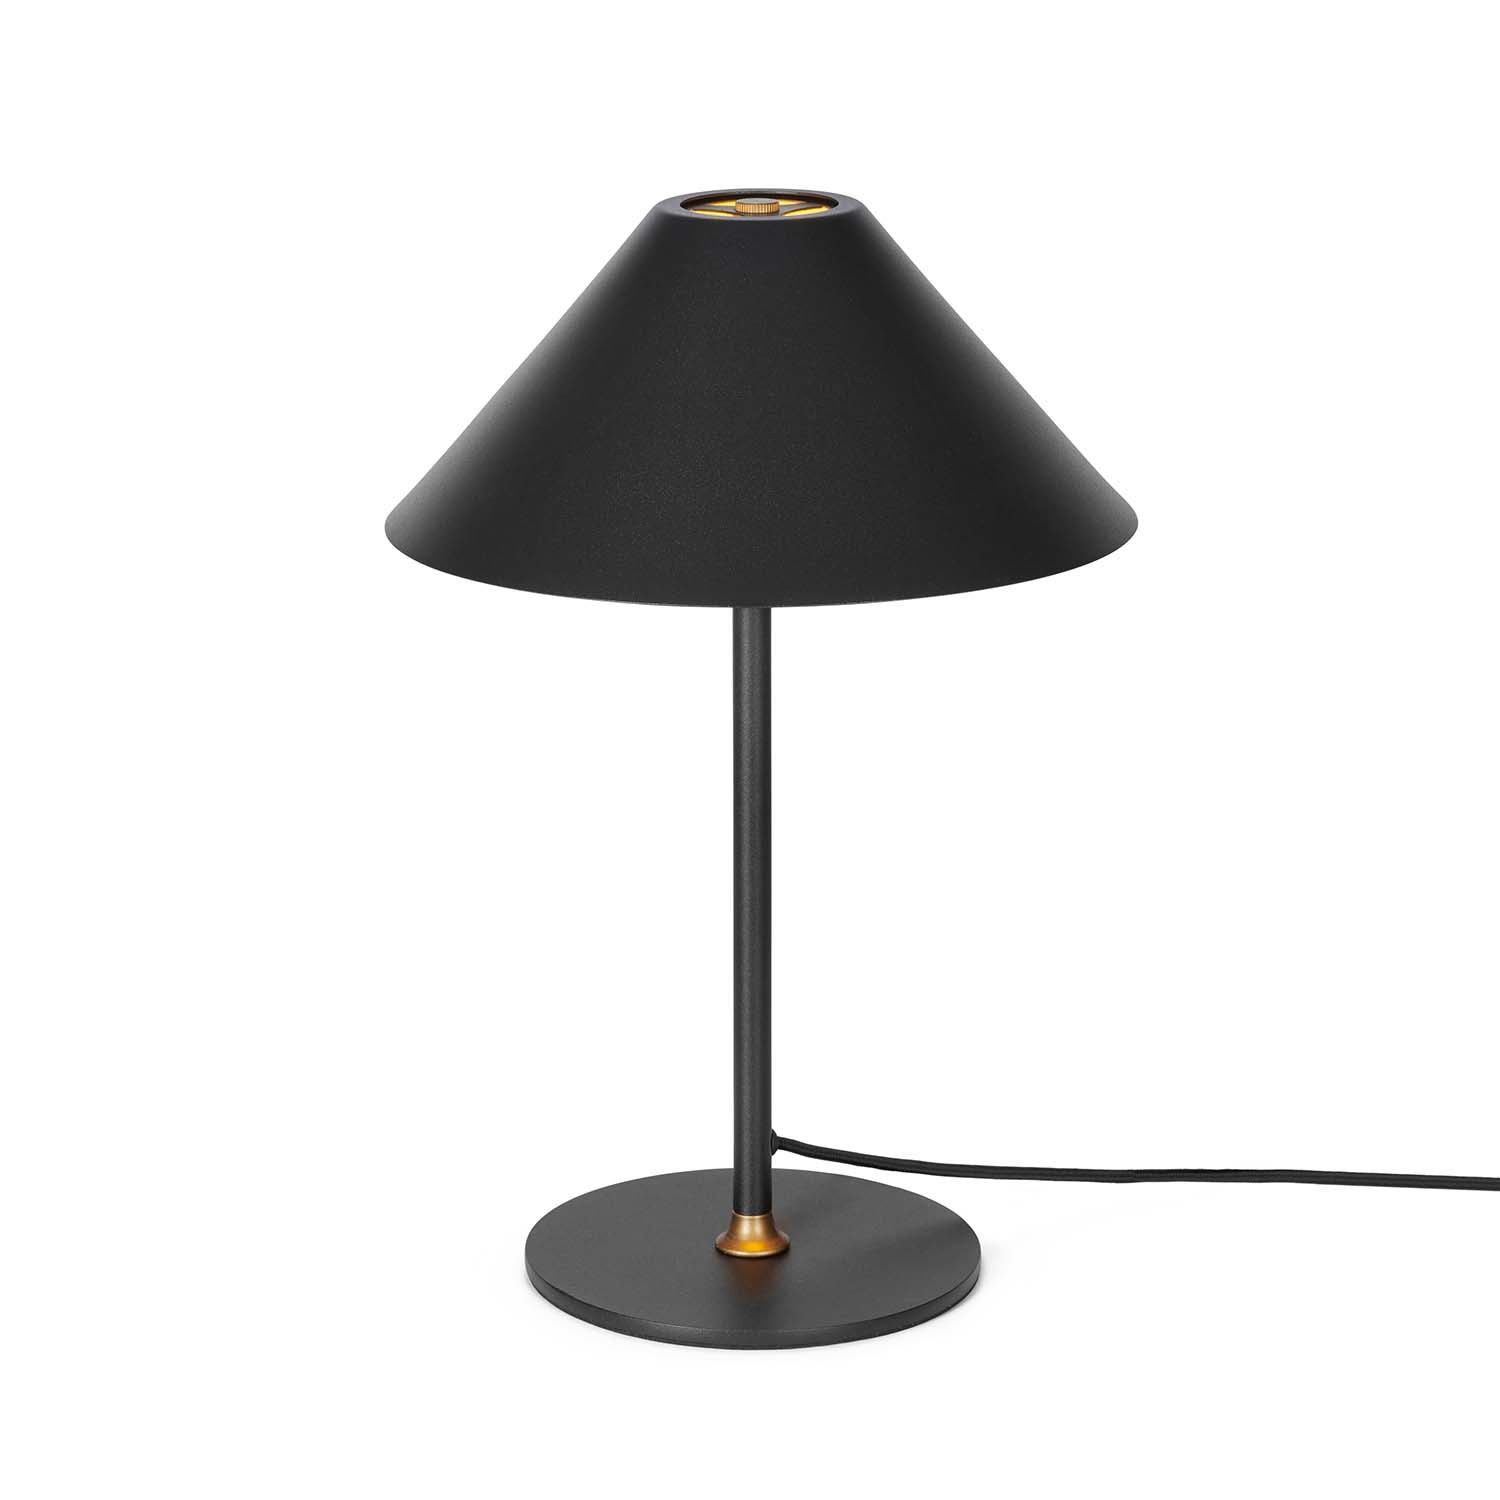 HYGGE – Konische Tischlampe im Vintage-Design